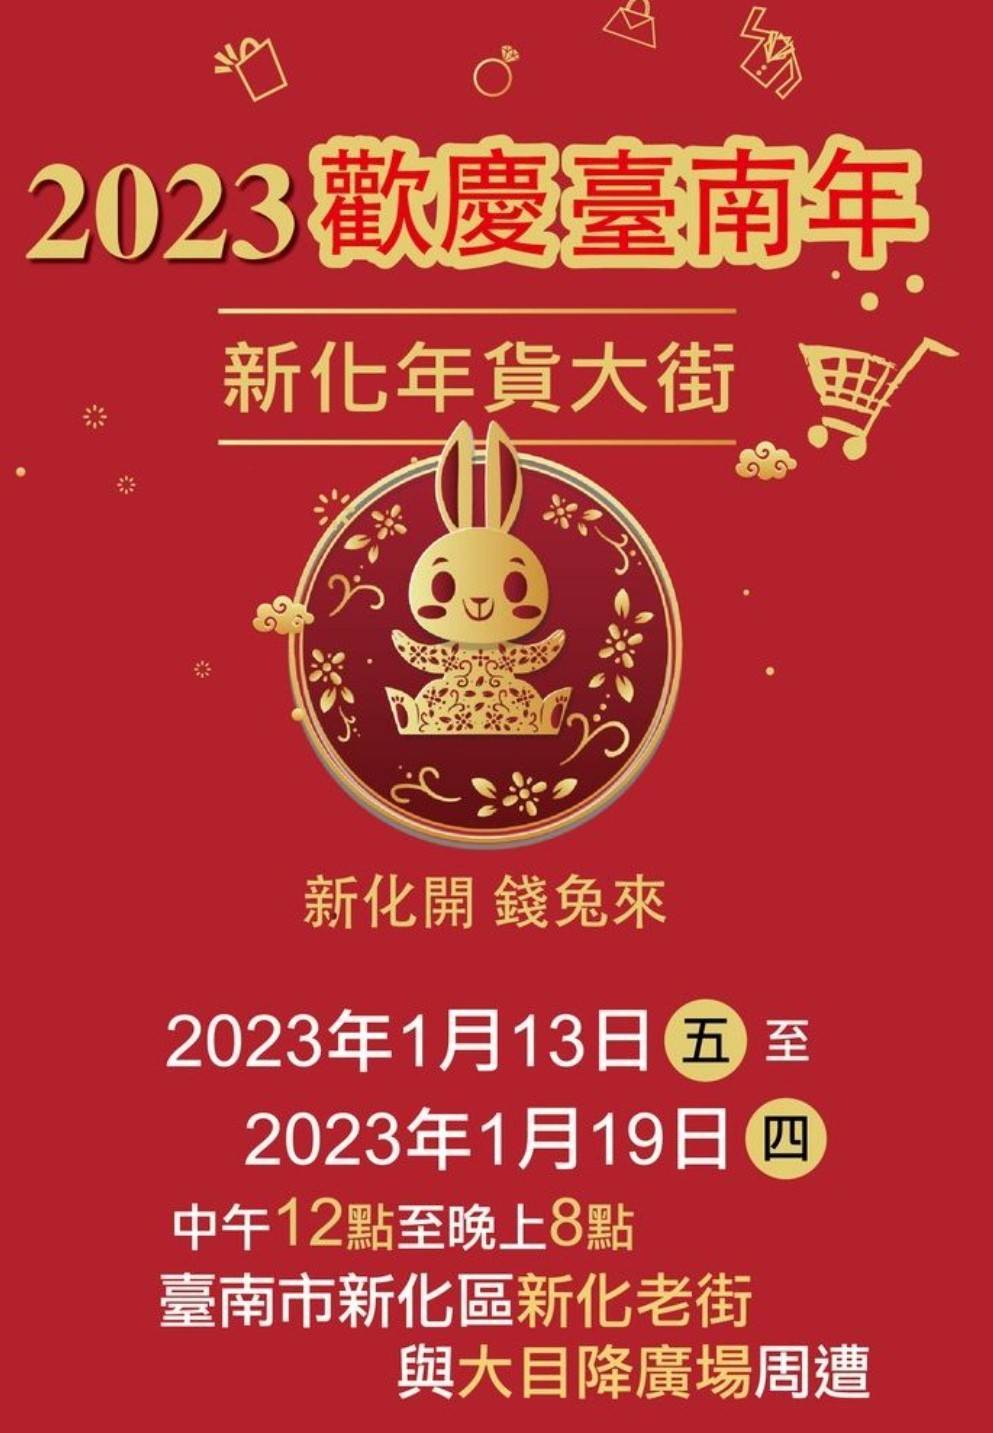 【台南活動】2023年台南1月份活動總整理，台南1月必去活動和景點都在這~